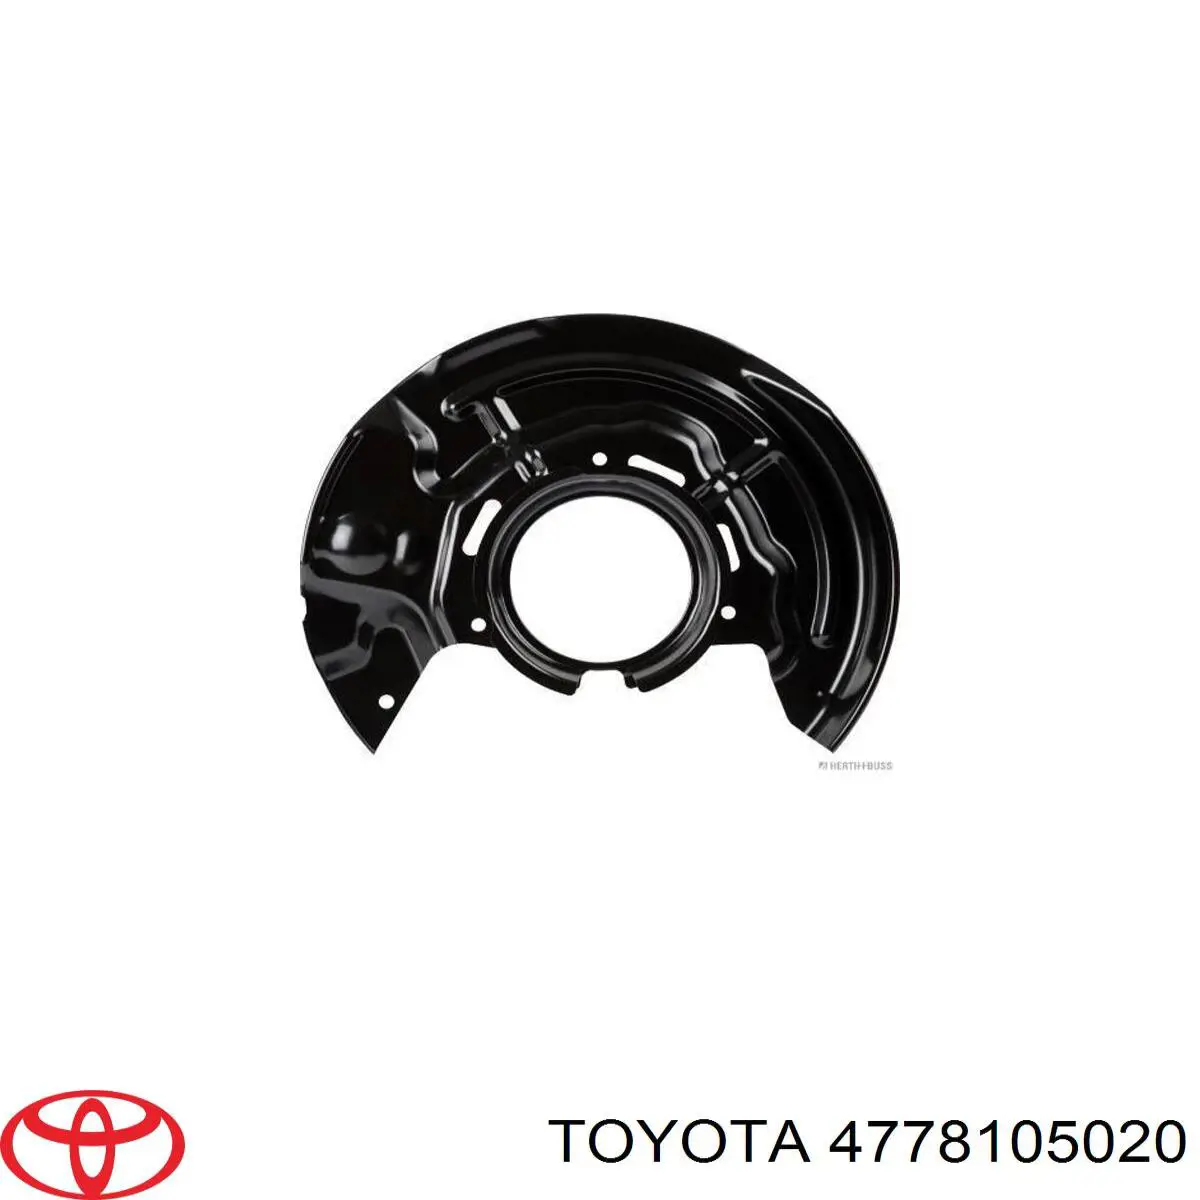 4778105020 Toyota chapa protectora contra salpicaduras, disco de freno delantero derecho